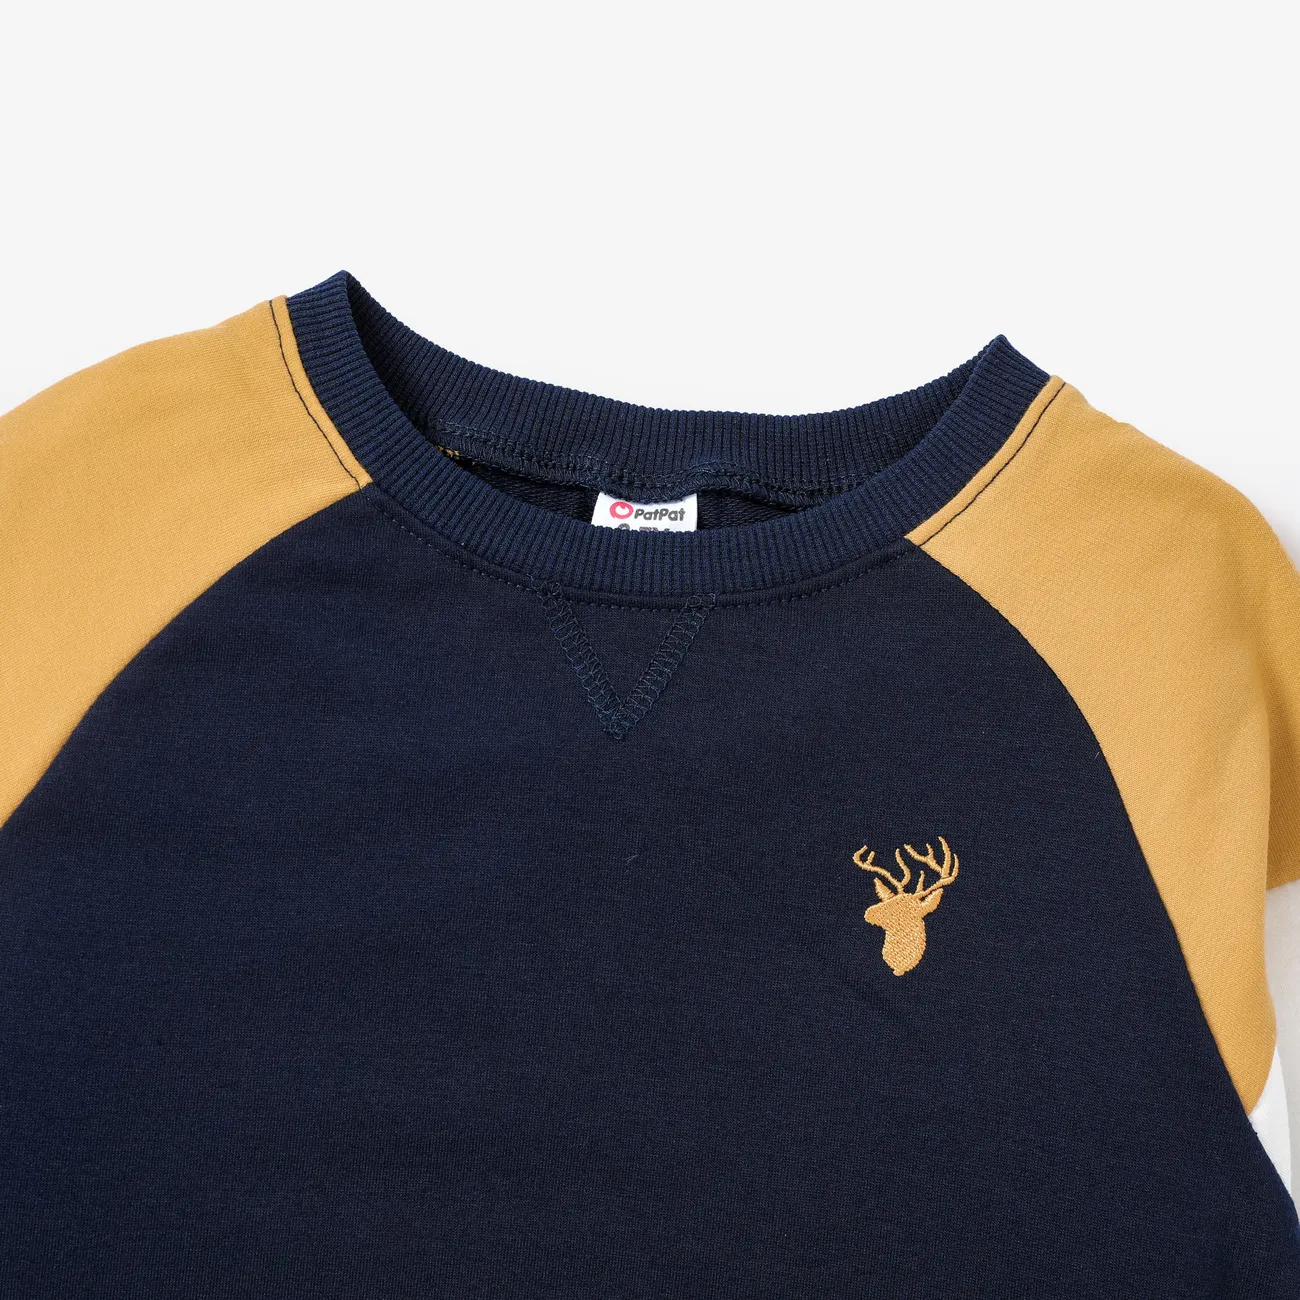 Kid Boy Solid und Stoff Stitching Sweatshirt/Schuhe/Hose tiefes Blau big image 1